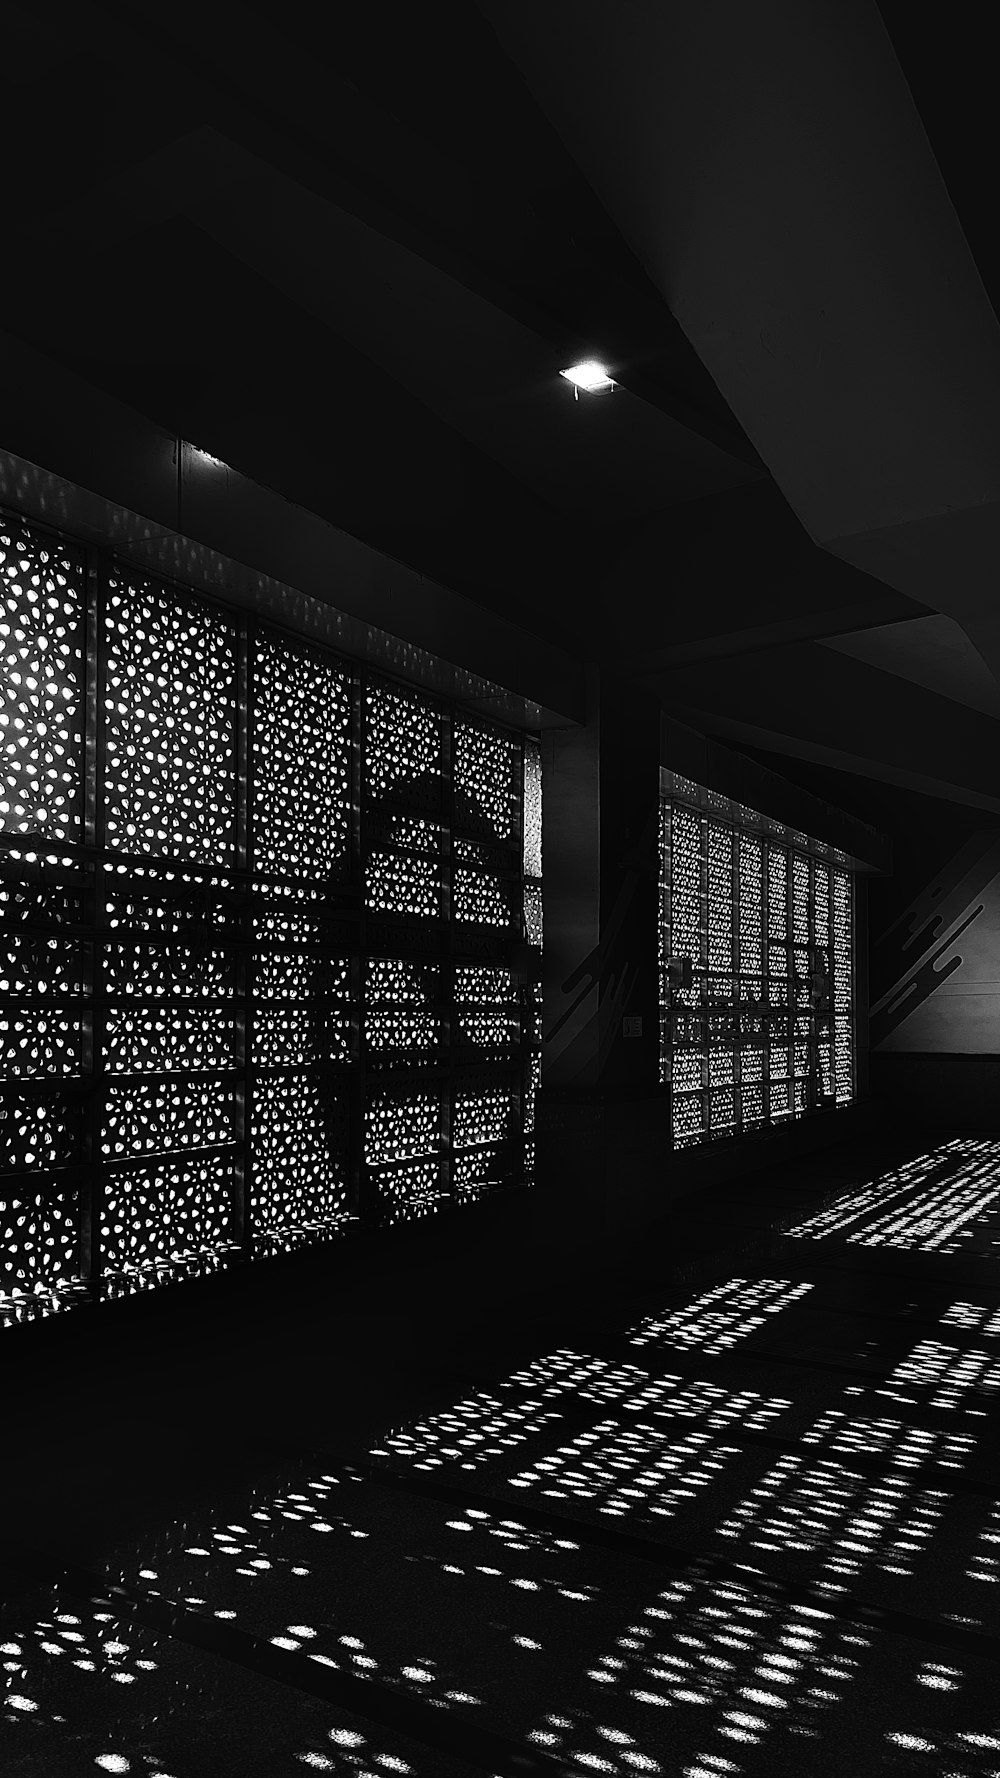 Una foto en blanco y negro de una habitación con muchas luces